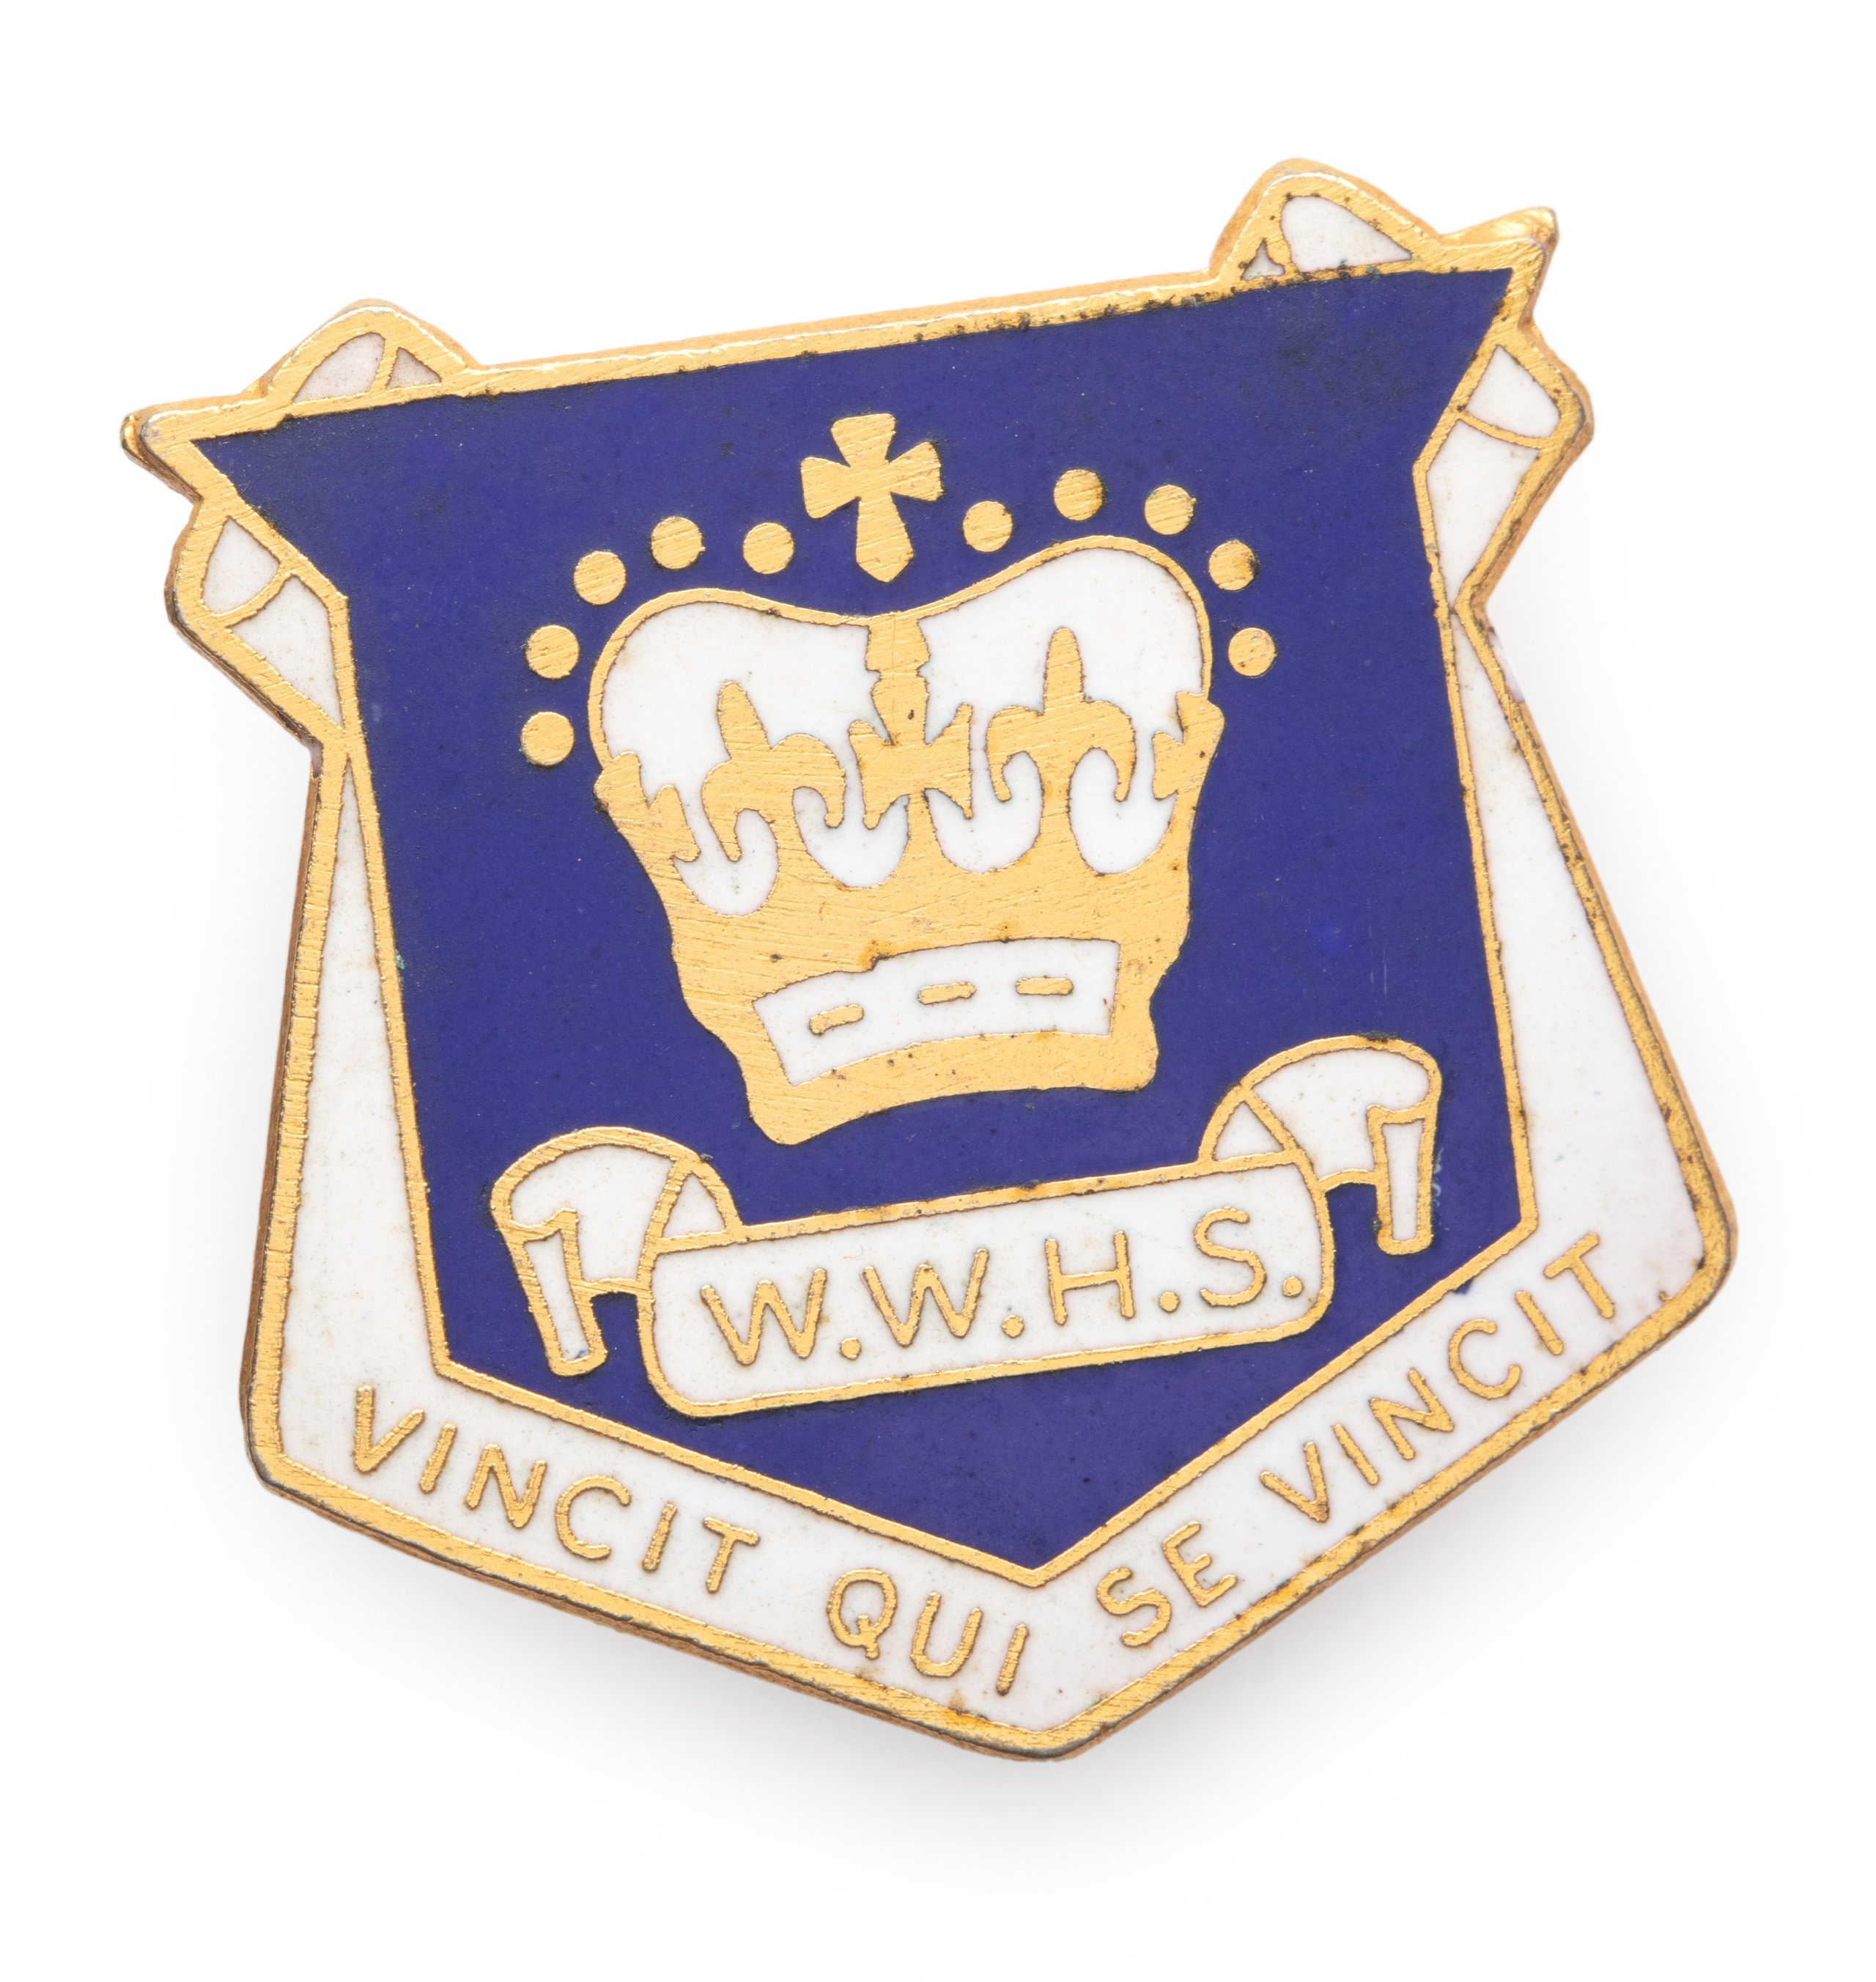 Wagga Wagga High School badge